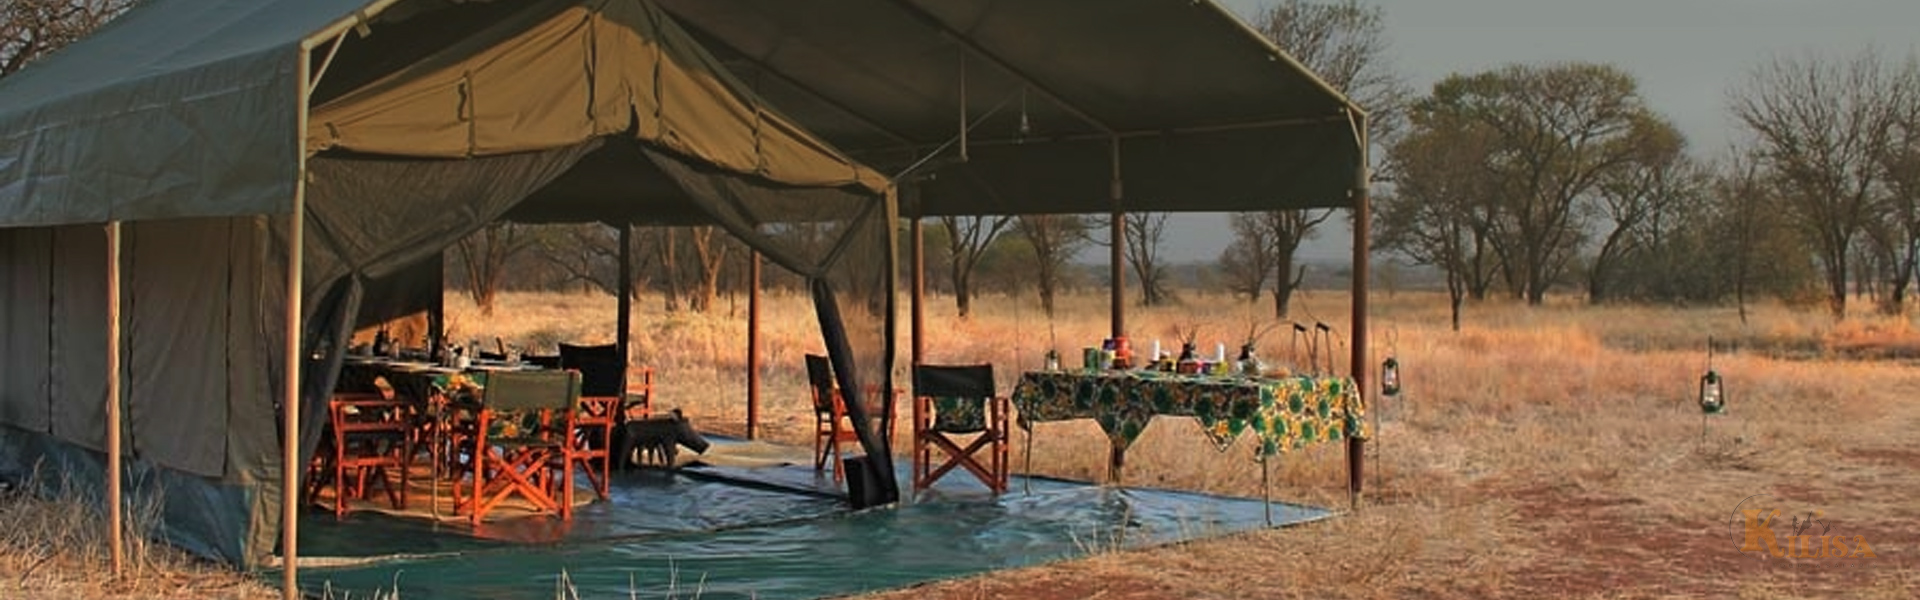 Tanzania Budget Camping Safari (Serengeti)